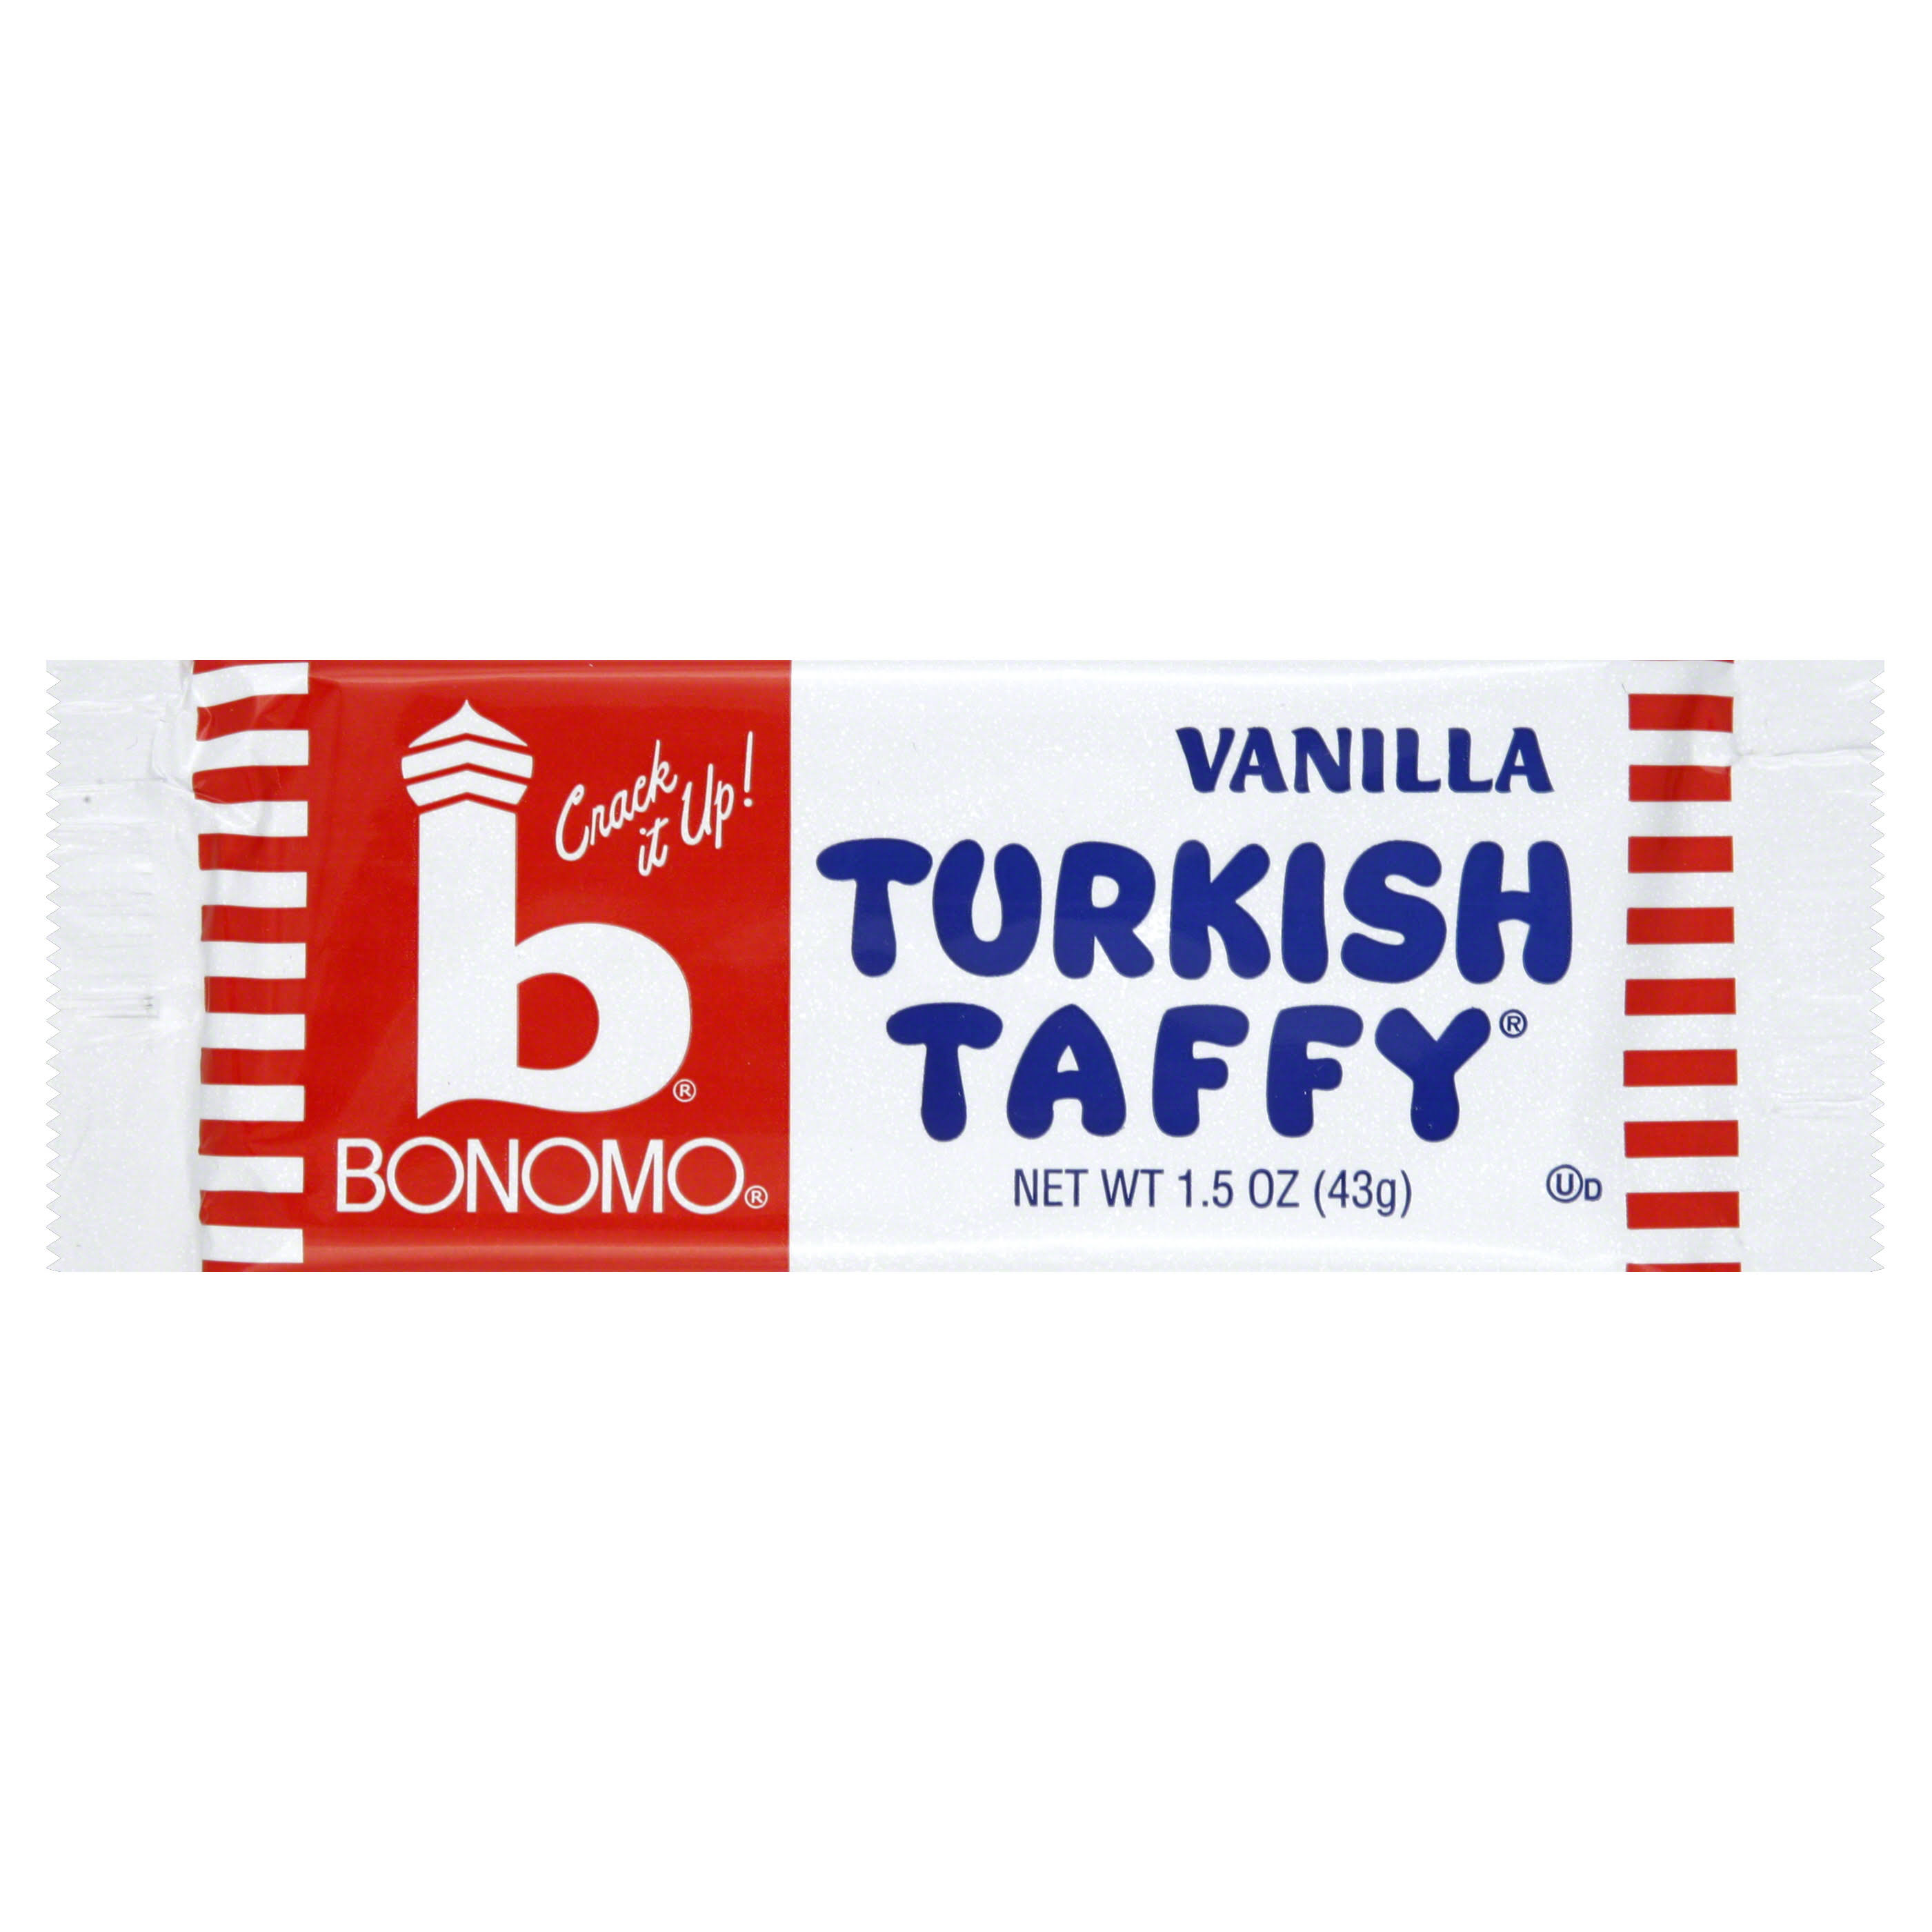 Bonomo Turkish Taffy - Vanilla, 24 pack